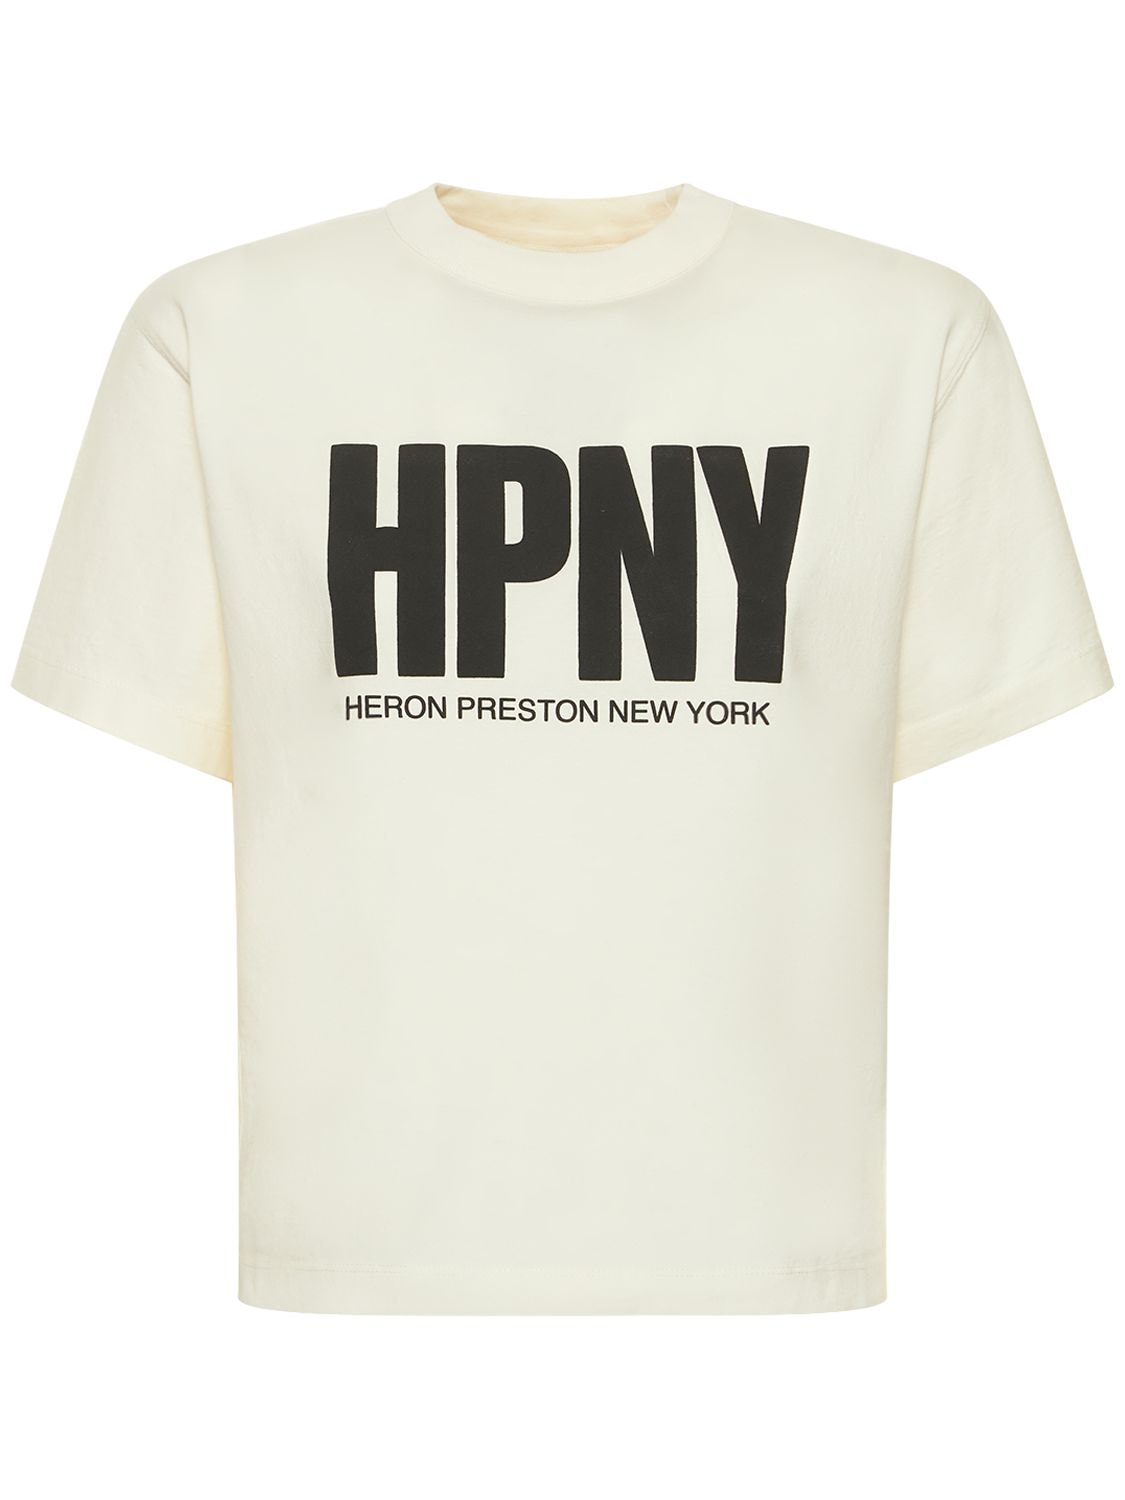 T-shirt En Jersey De Coton Mélangé Hpny